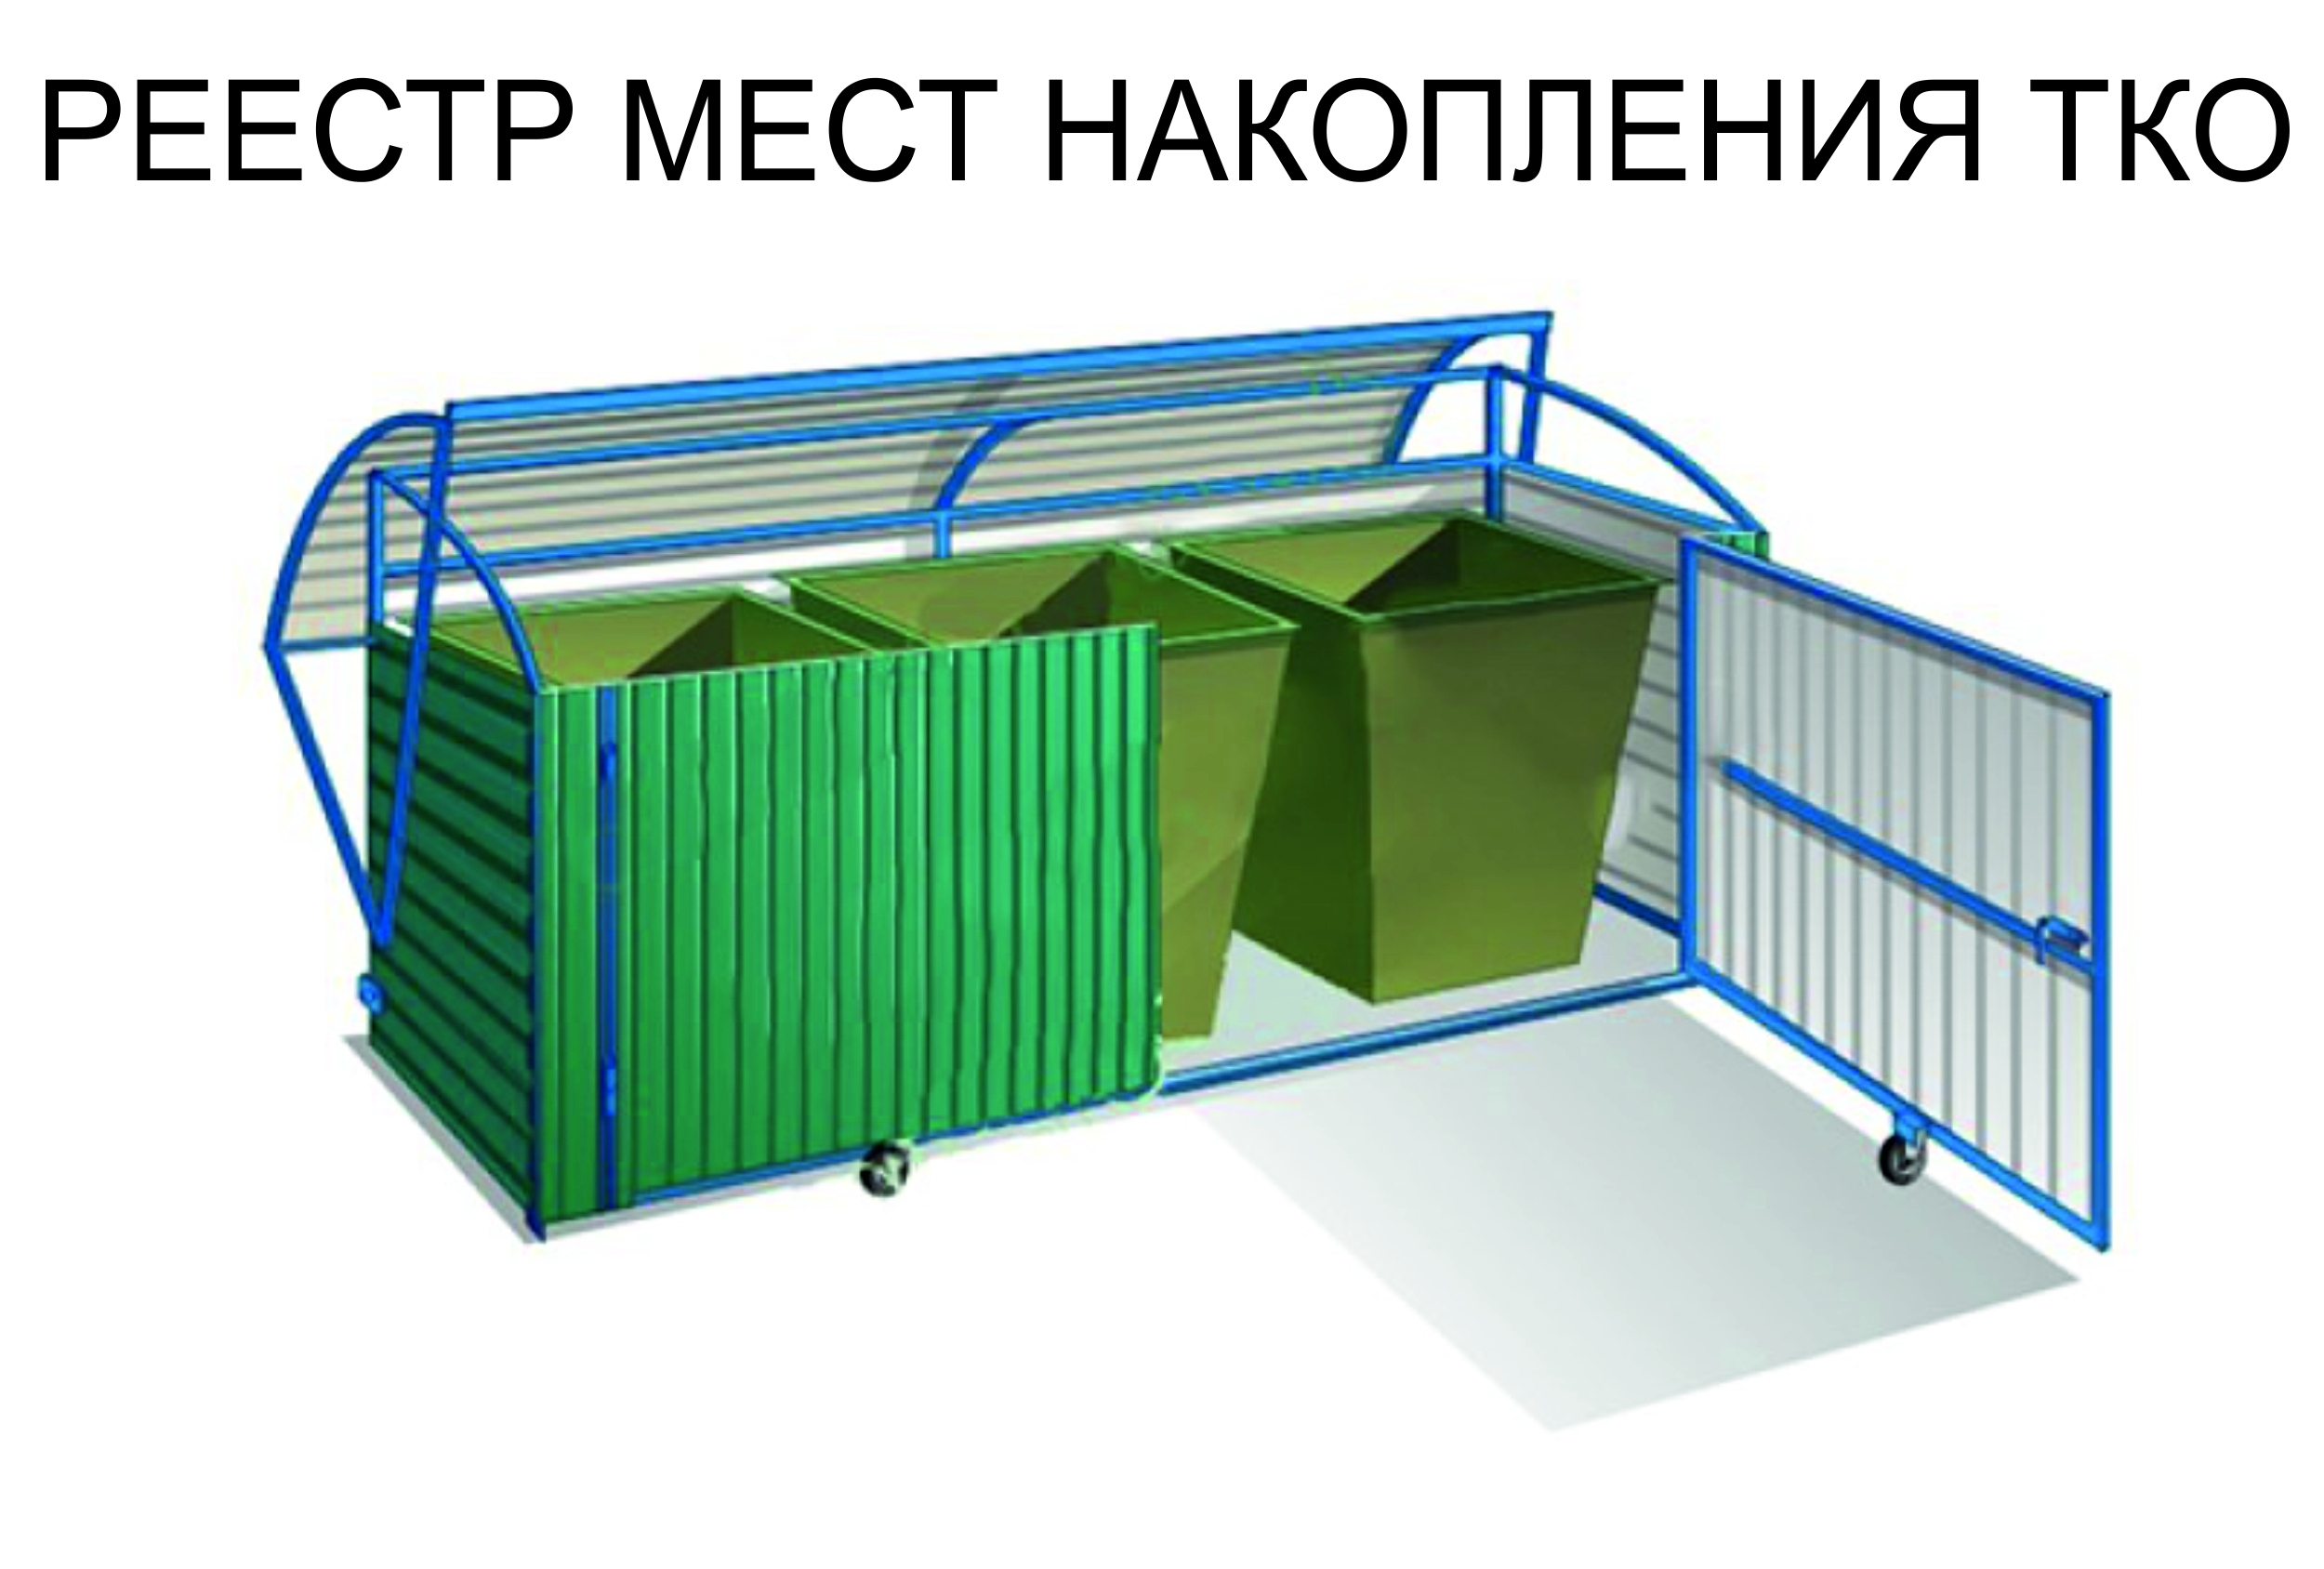 Правила обустройства контейнерных площадок и ведение реестра